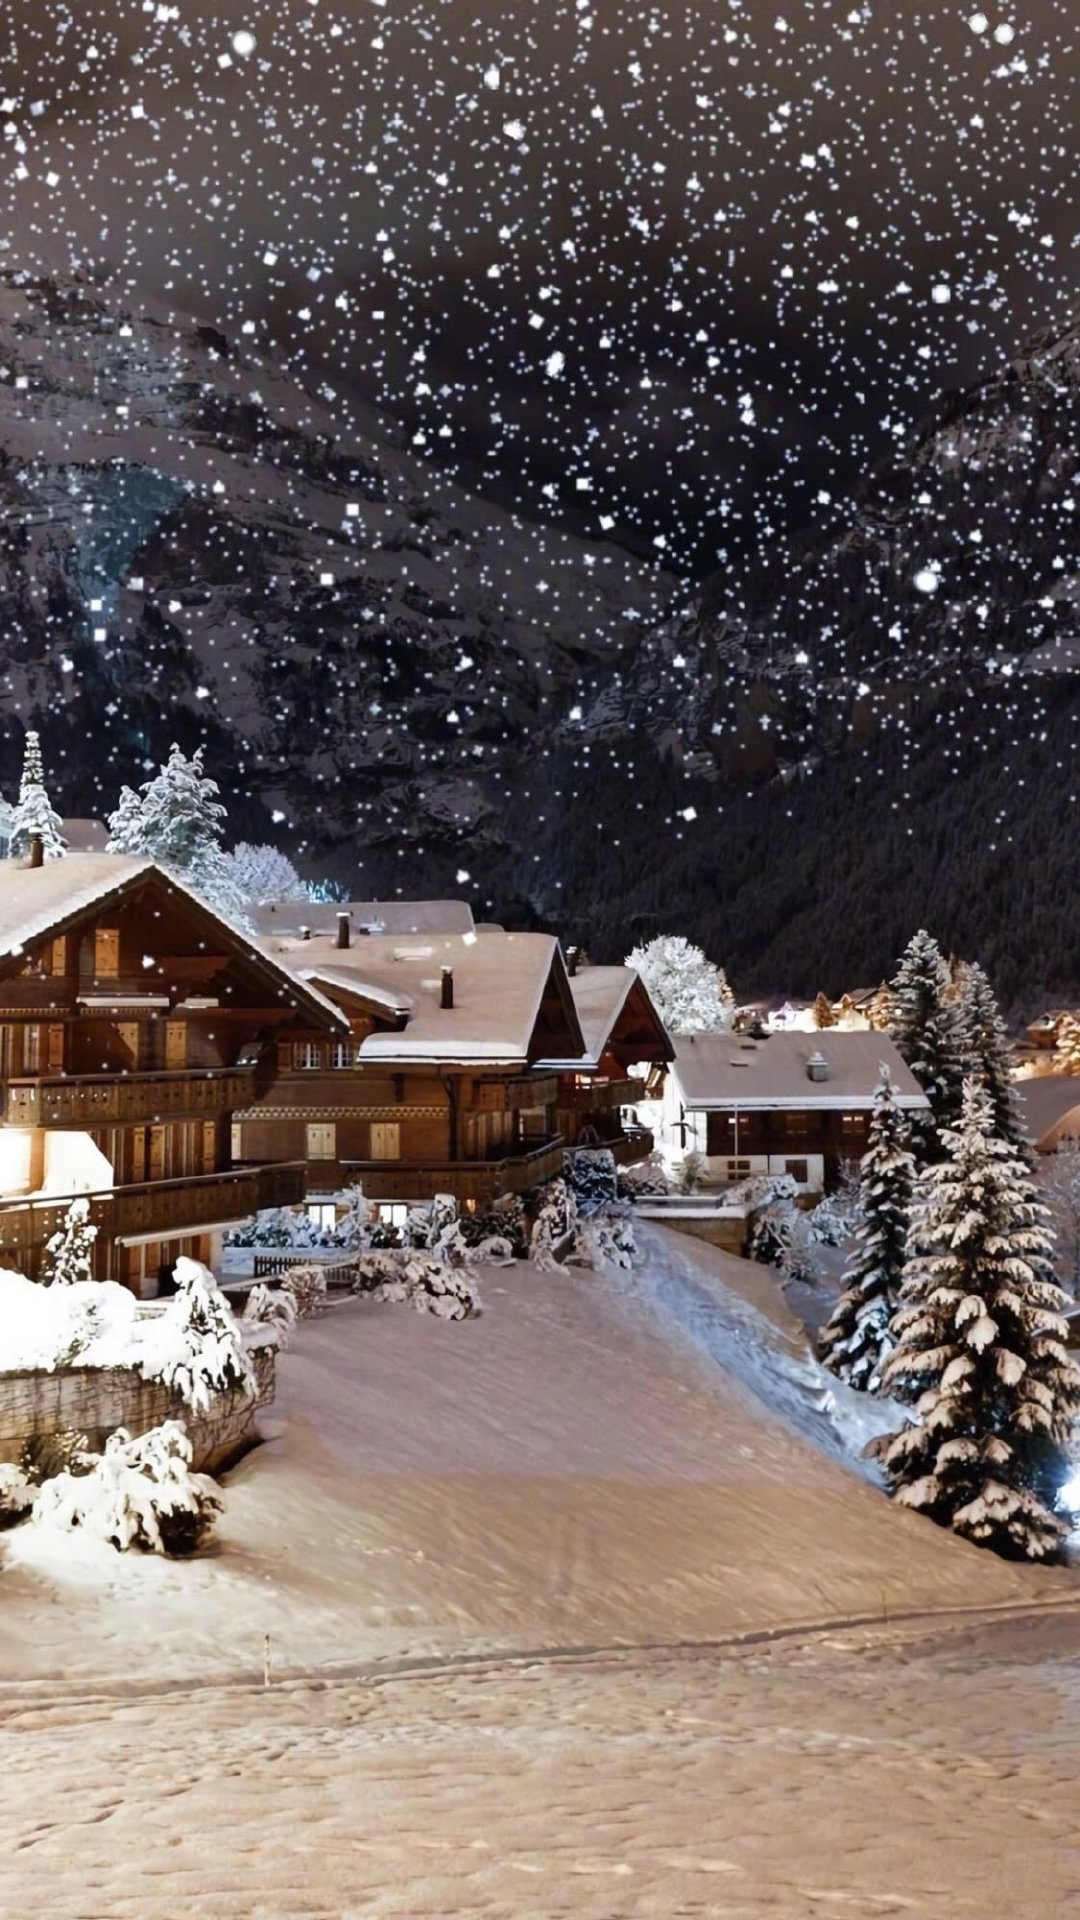 气候变化导致圣诞树价格创新高这组瑞士雪夜的雪景梦幻温馨 zt